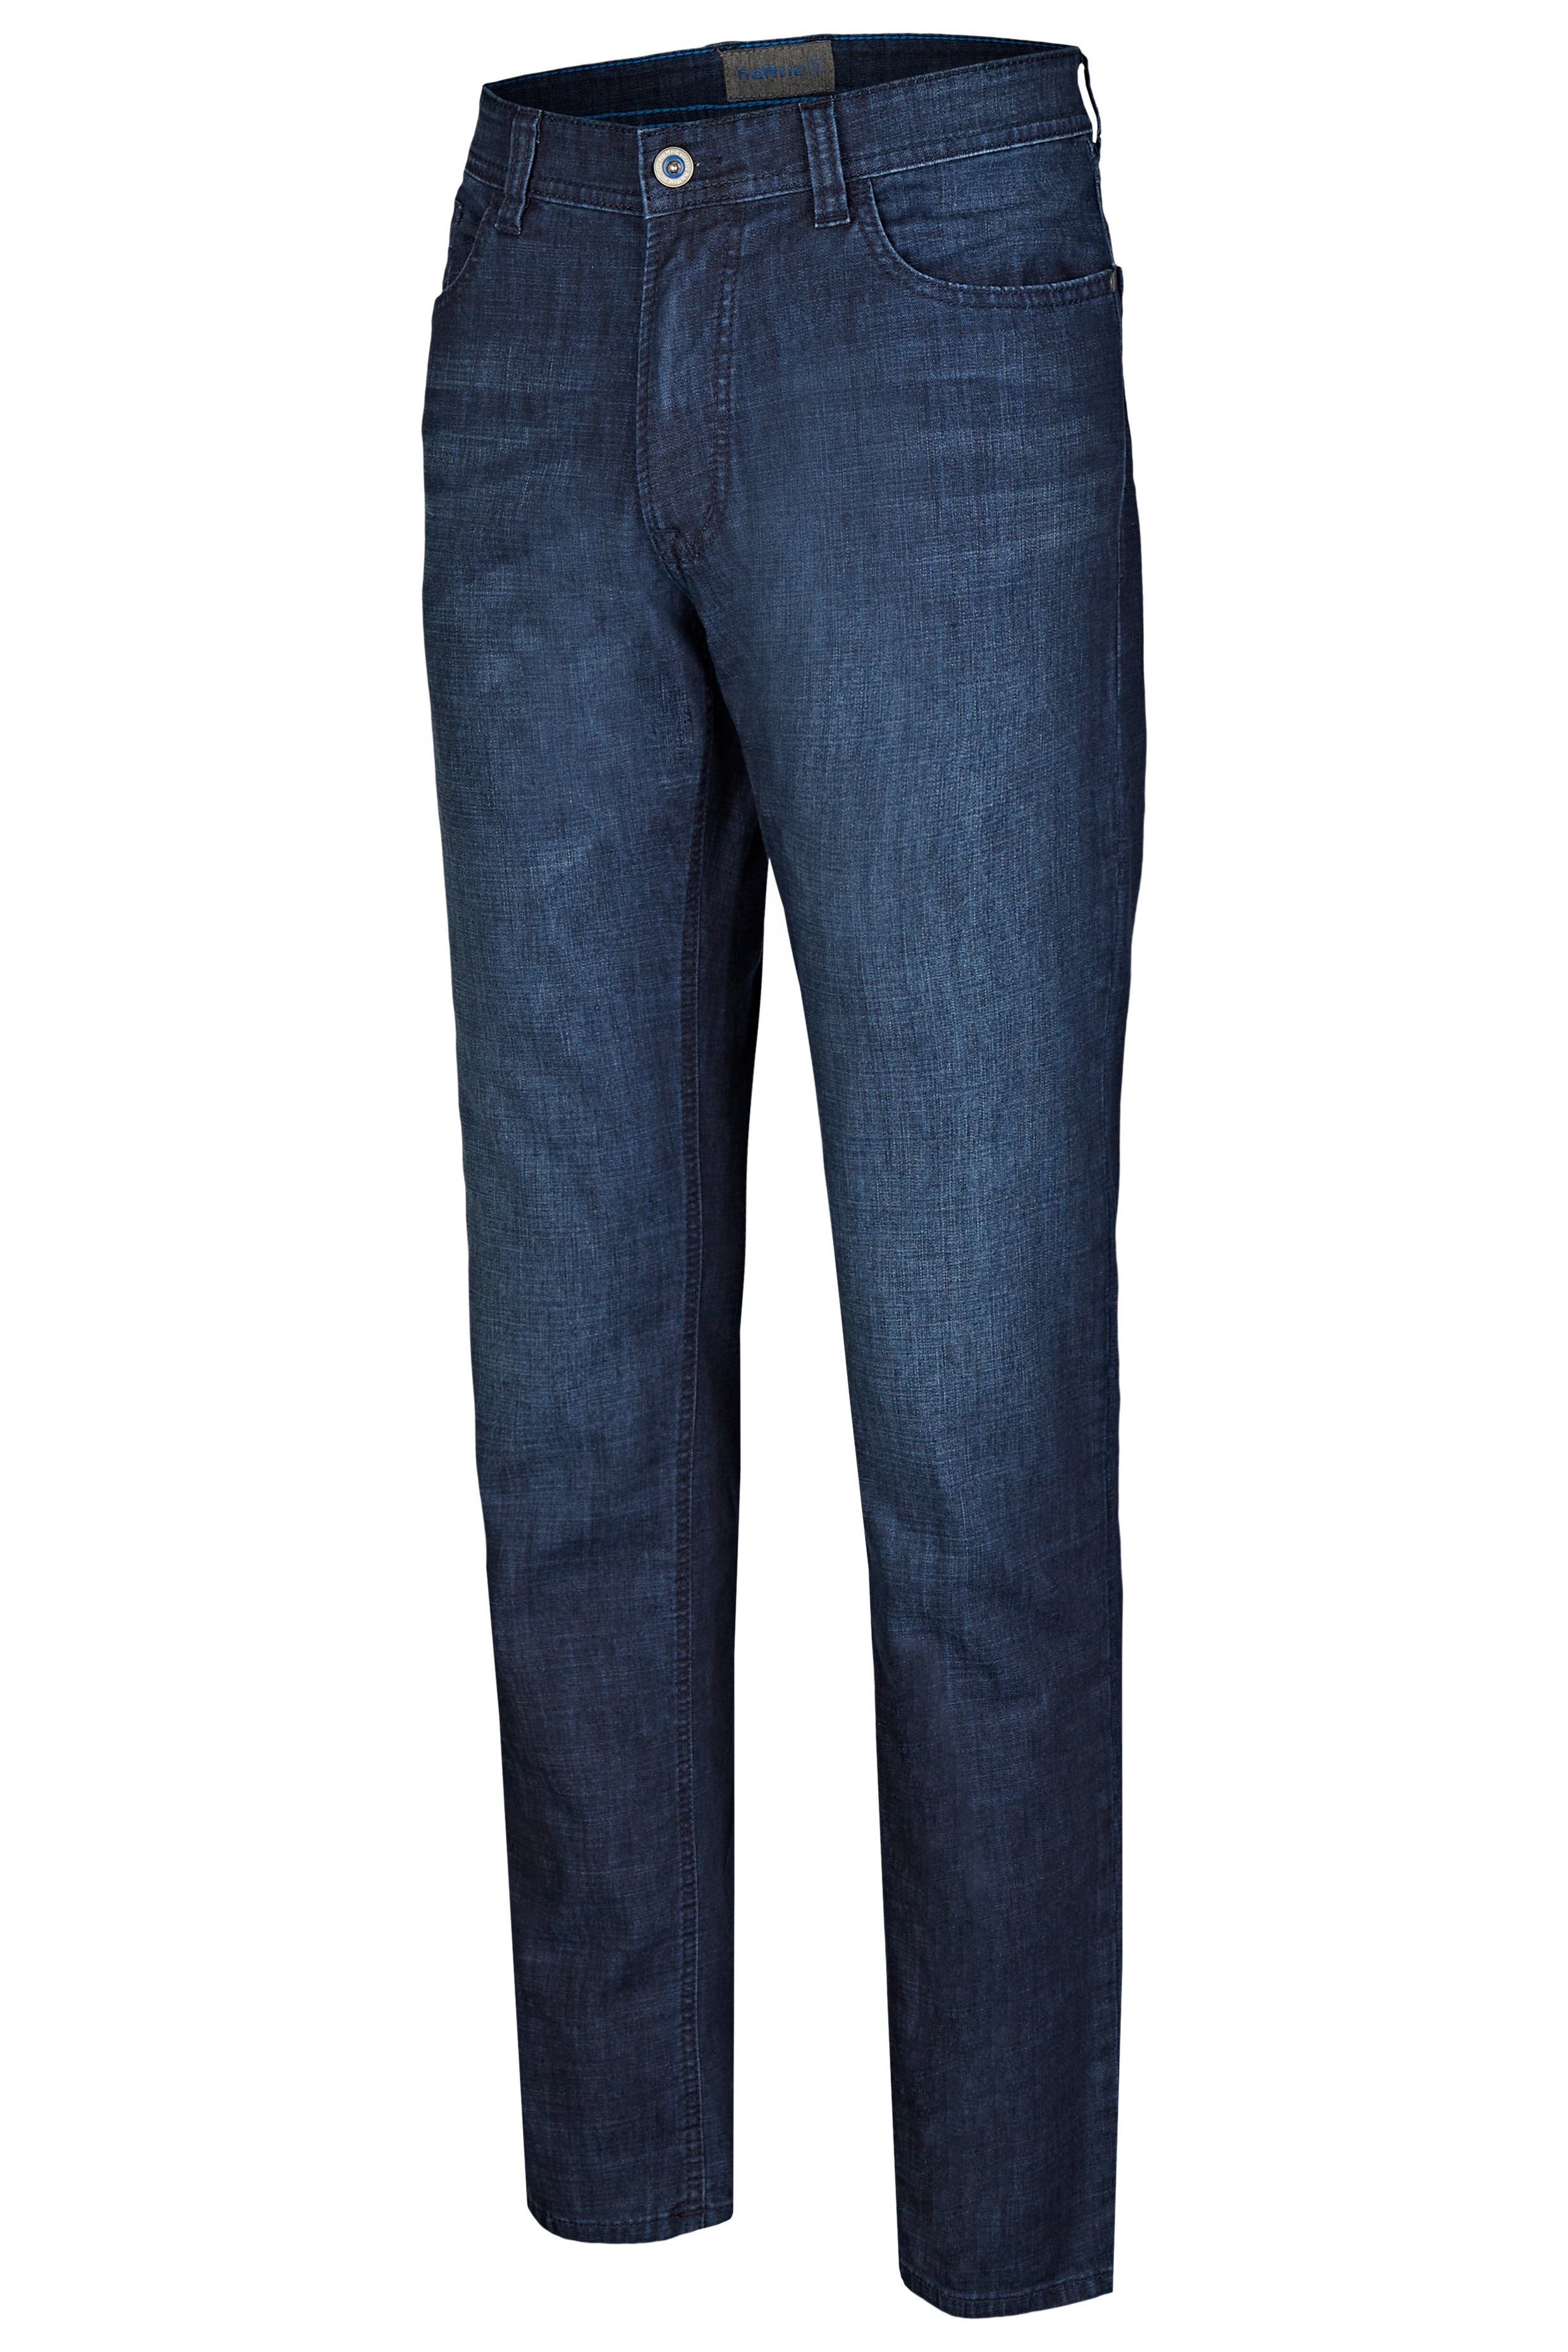 Hattric 5-Pocket-Jeans Hattric Herren Denim Summer dark Hunter 5-Pocket-Jeans indigo